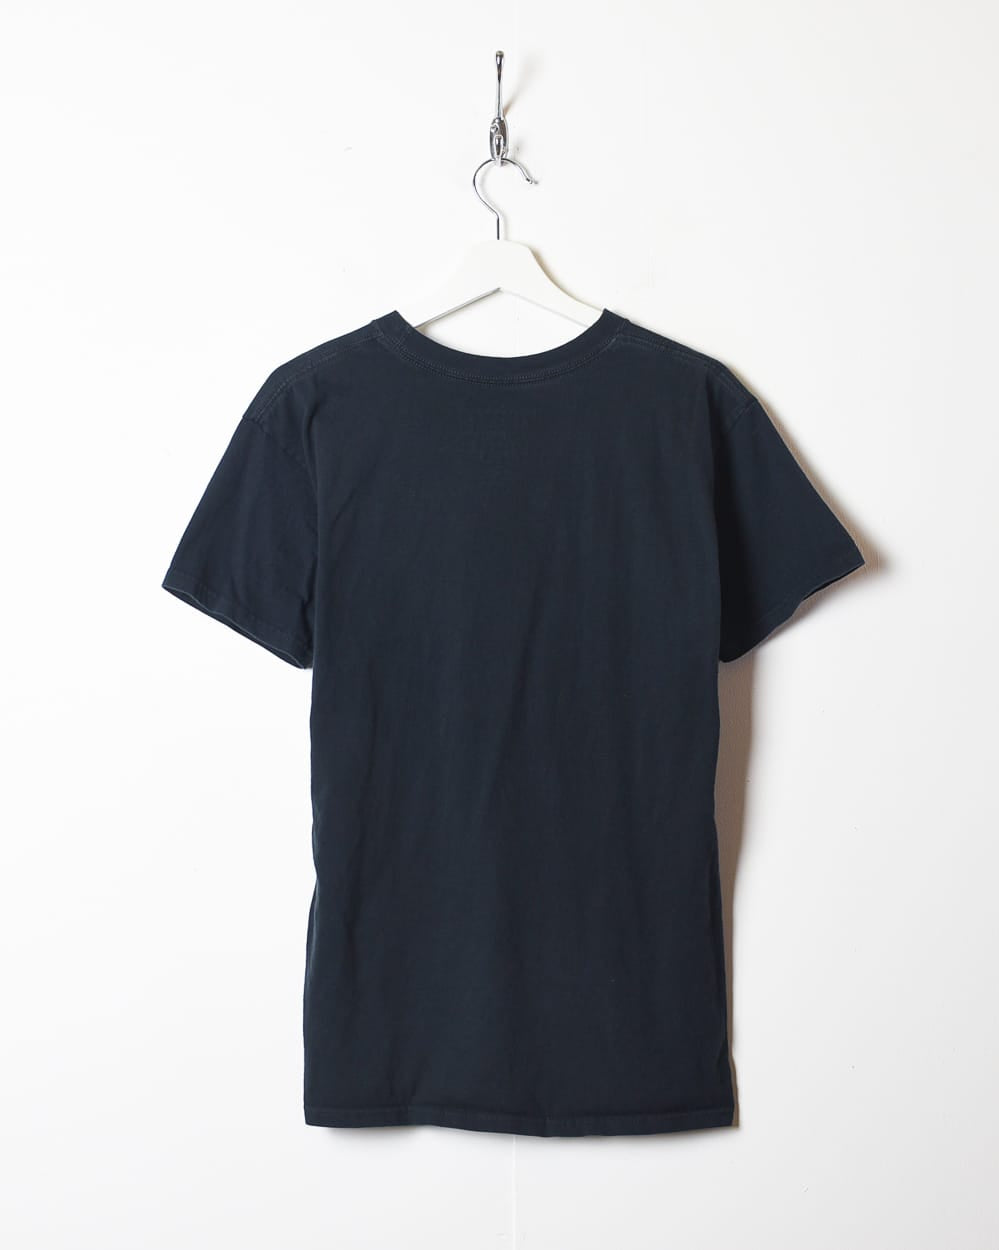 Black Billabong Graphic T-Shirt - Small